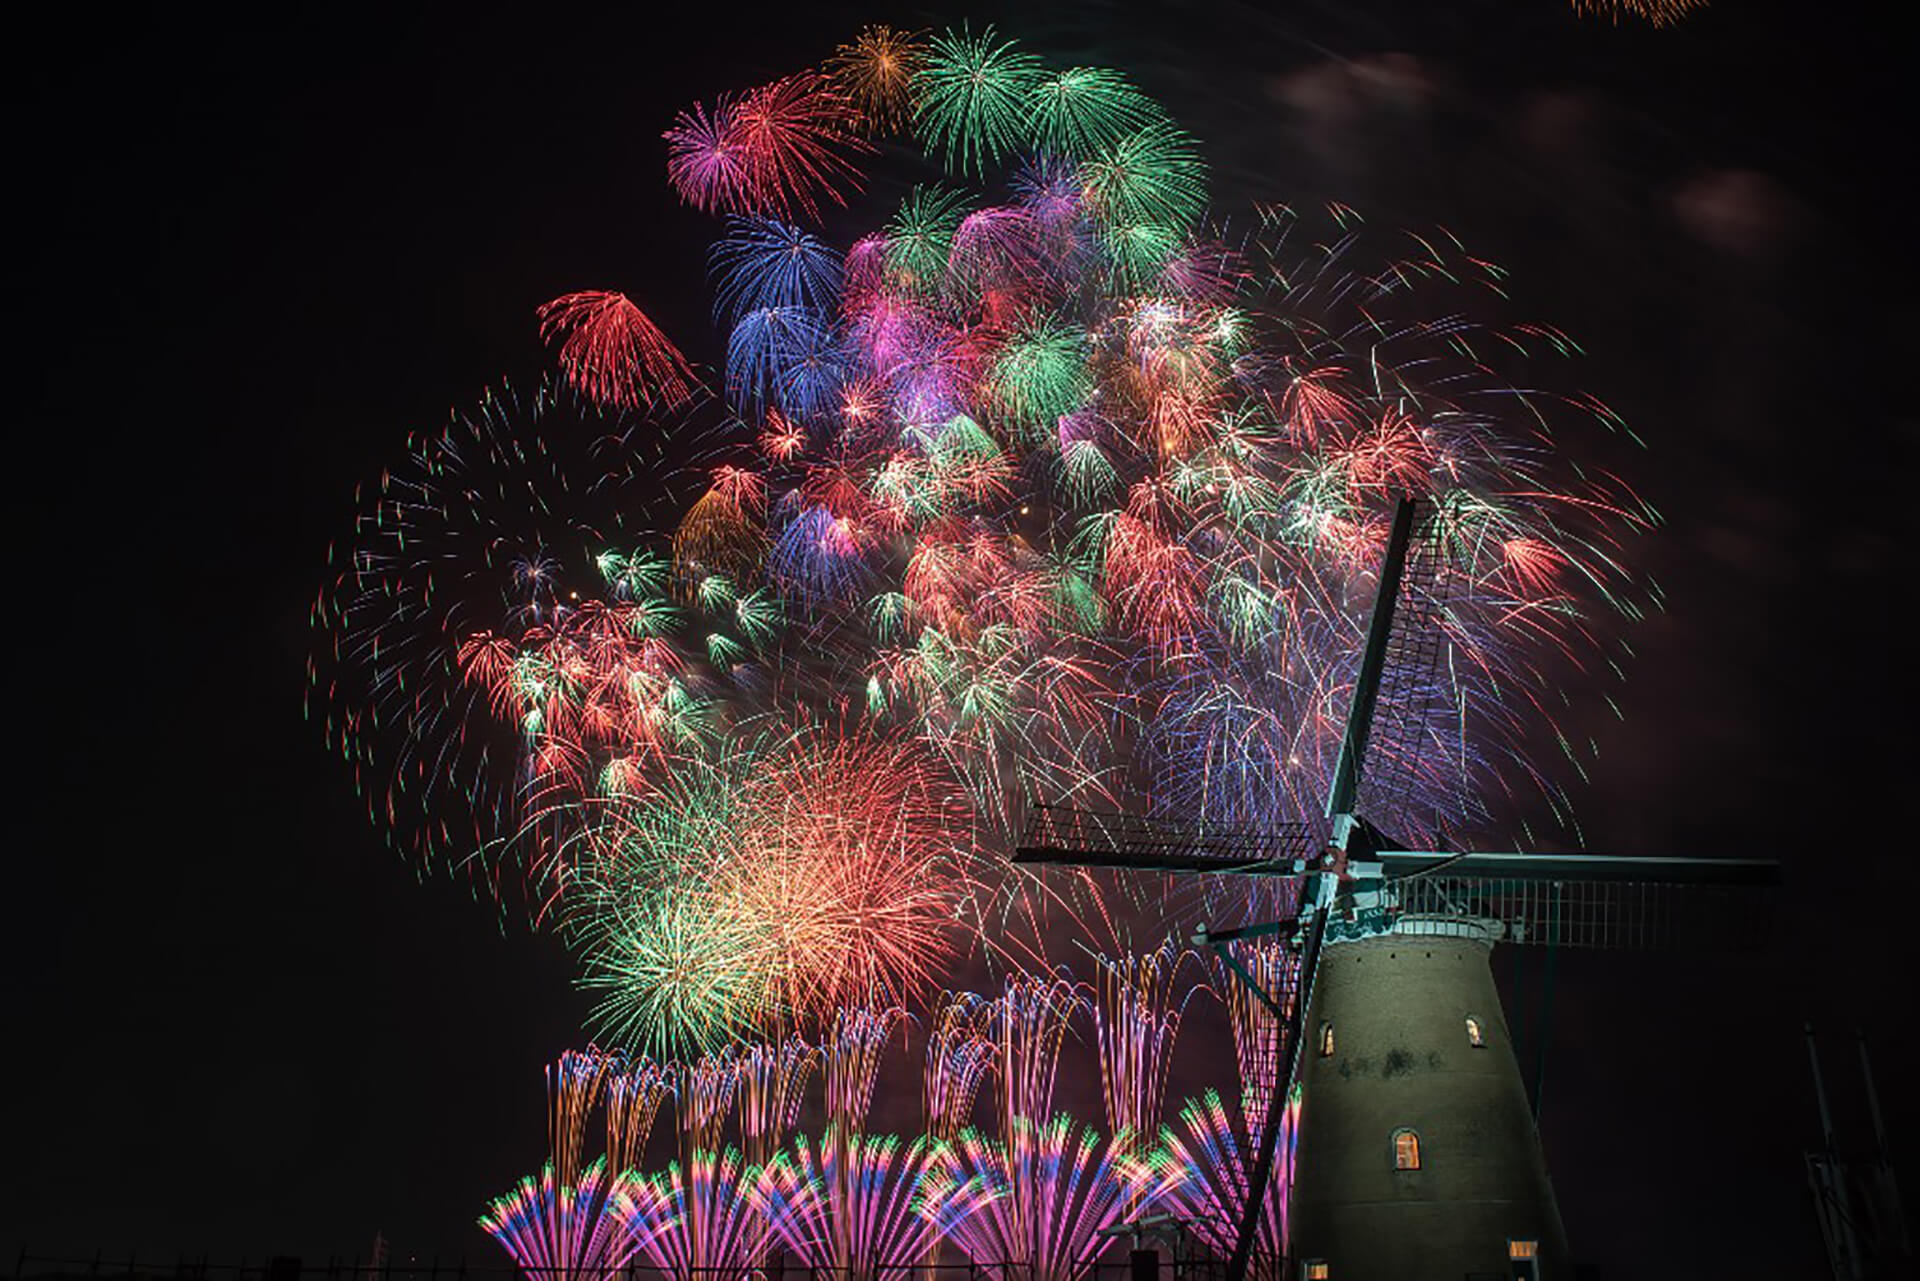 この写真は、佐倉花火フェスタ2019のメインビジュアル。圧巻のビッグプレミアムスターマインと呼ぶ花火です